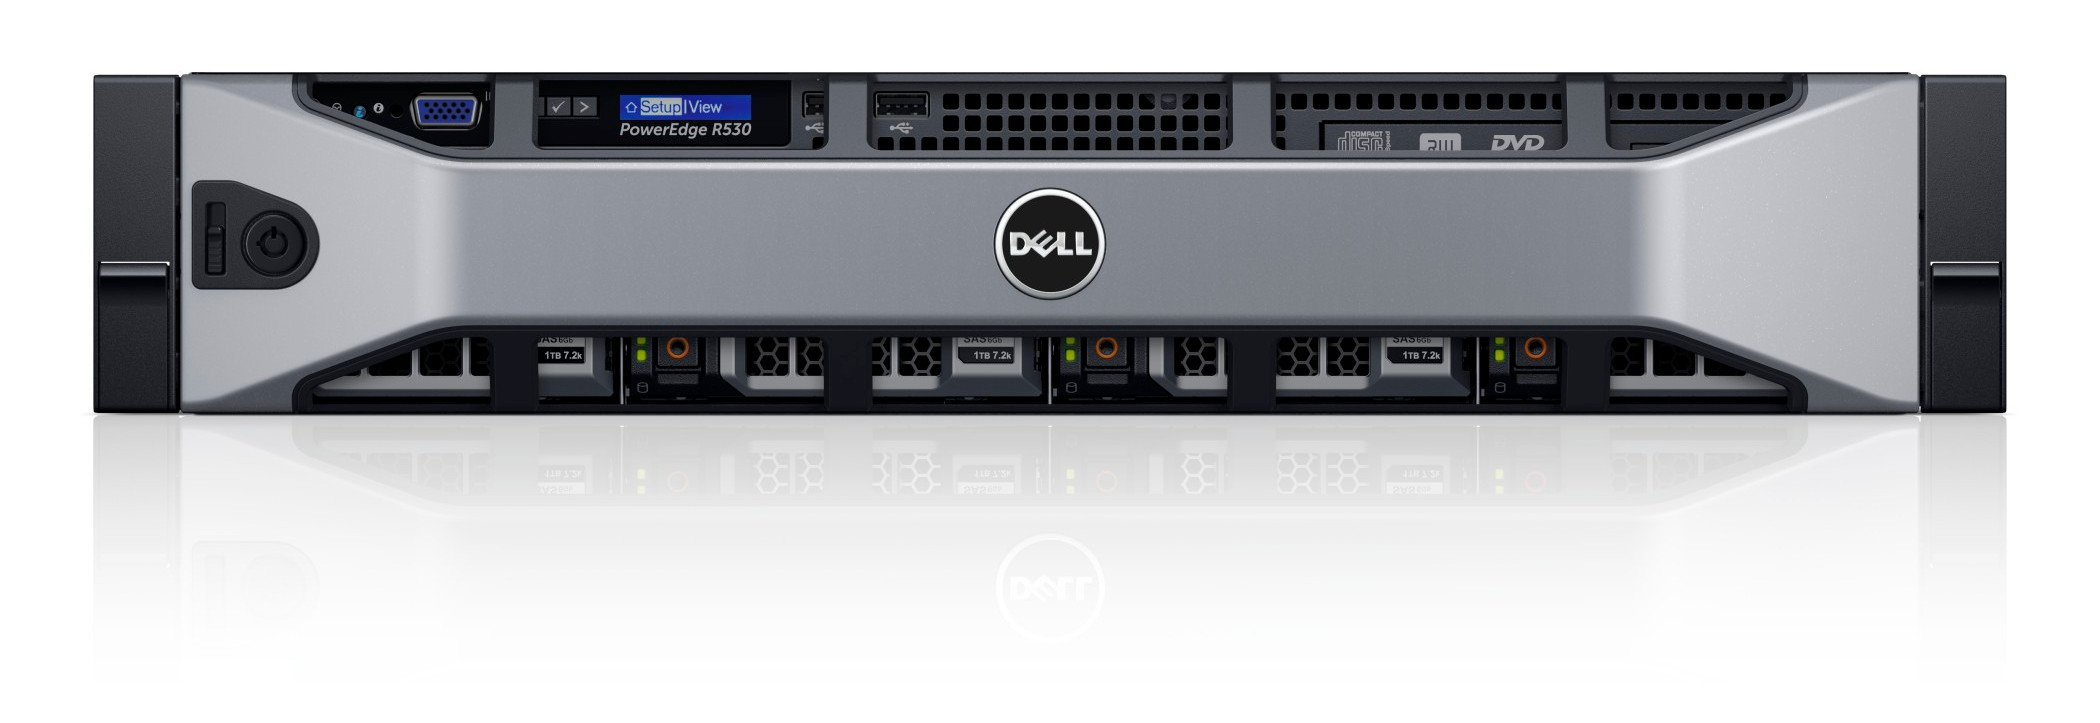 Server Dell rack PowerEdge R530